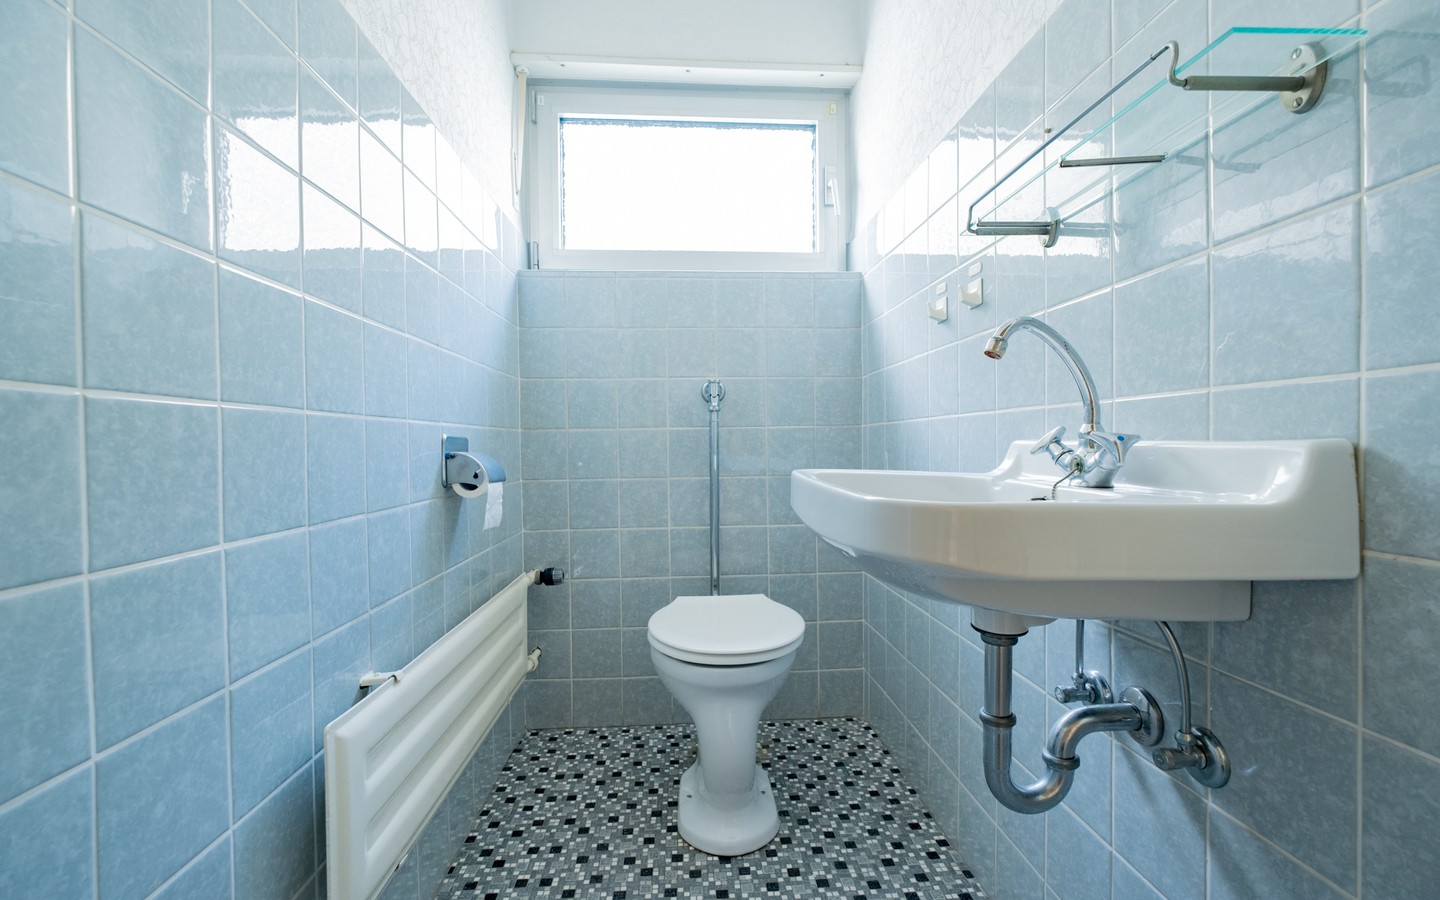 WC - Leimen: freistehendes Haus in Splitlevelbauweise, mit 2 Garagen, 2 Stellplätzen und Garten